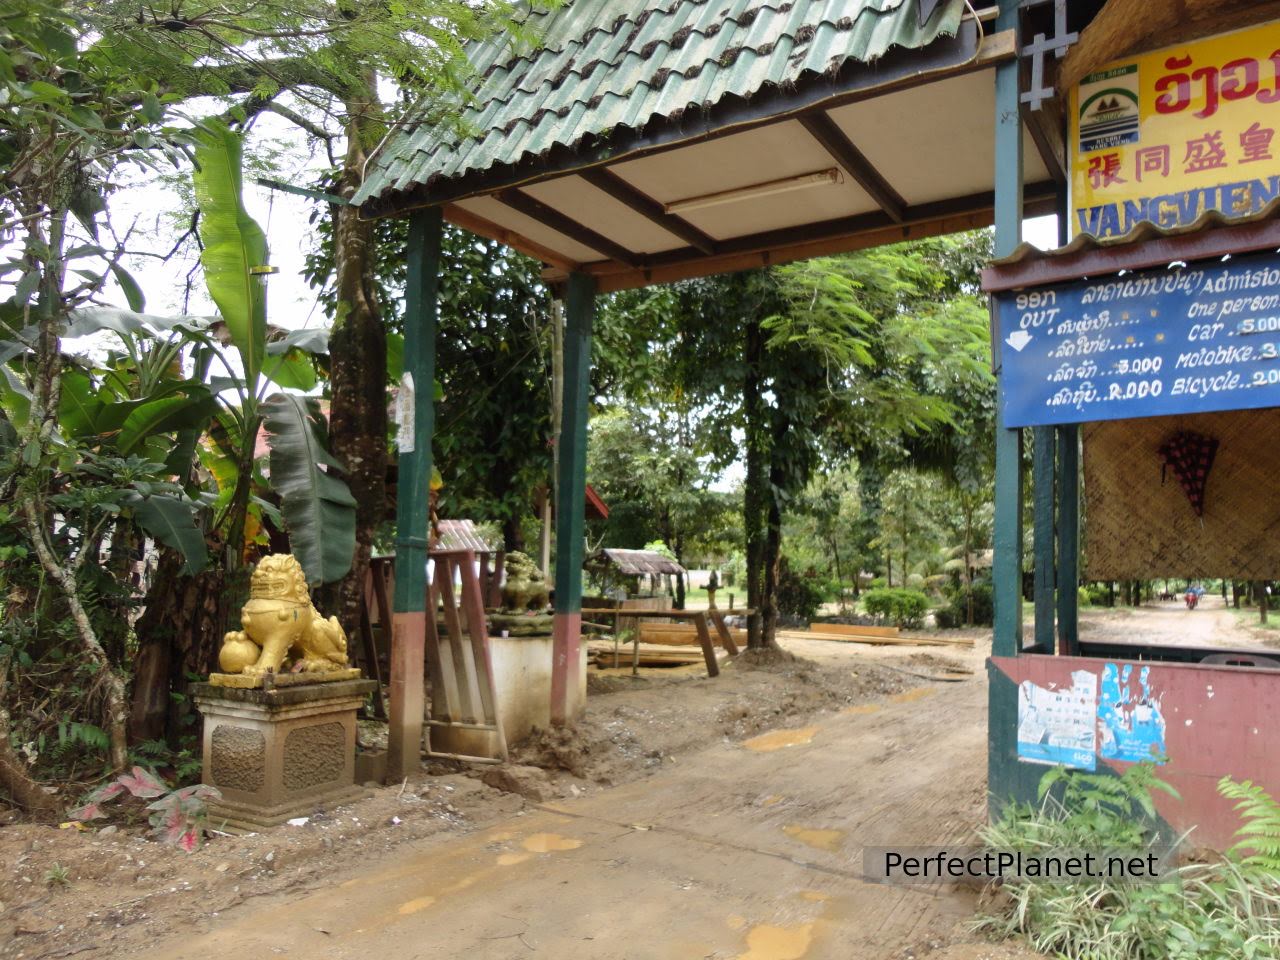 Vang Vieng resort entrance